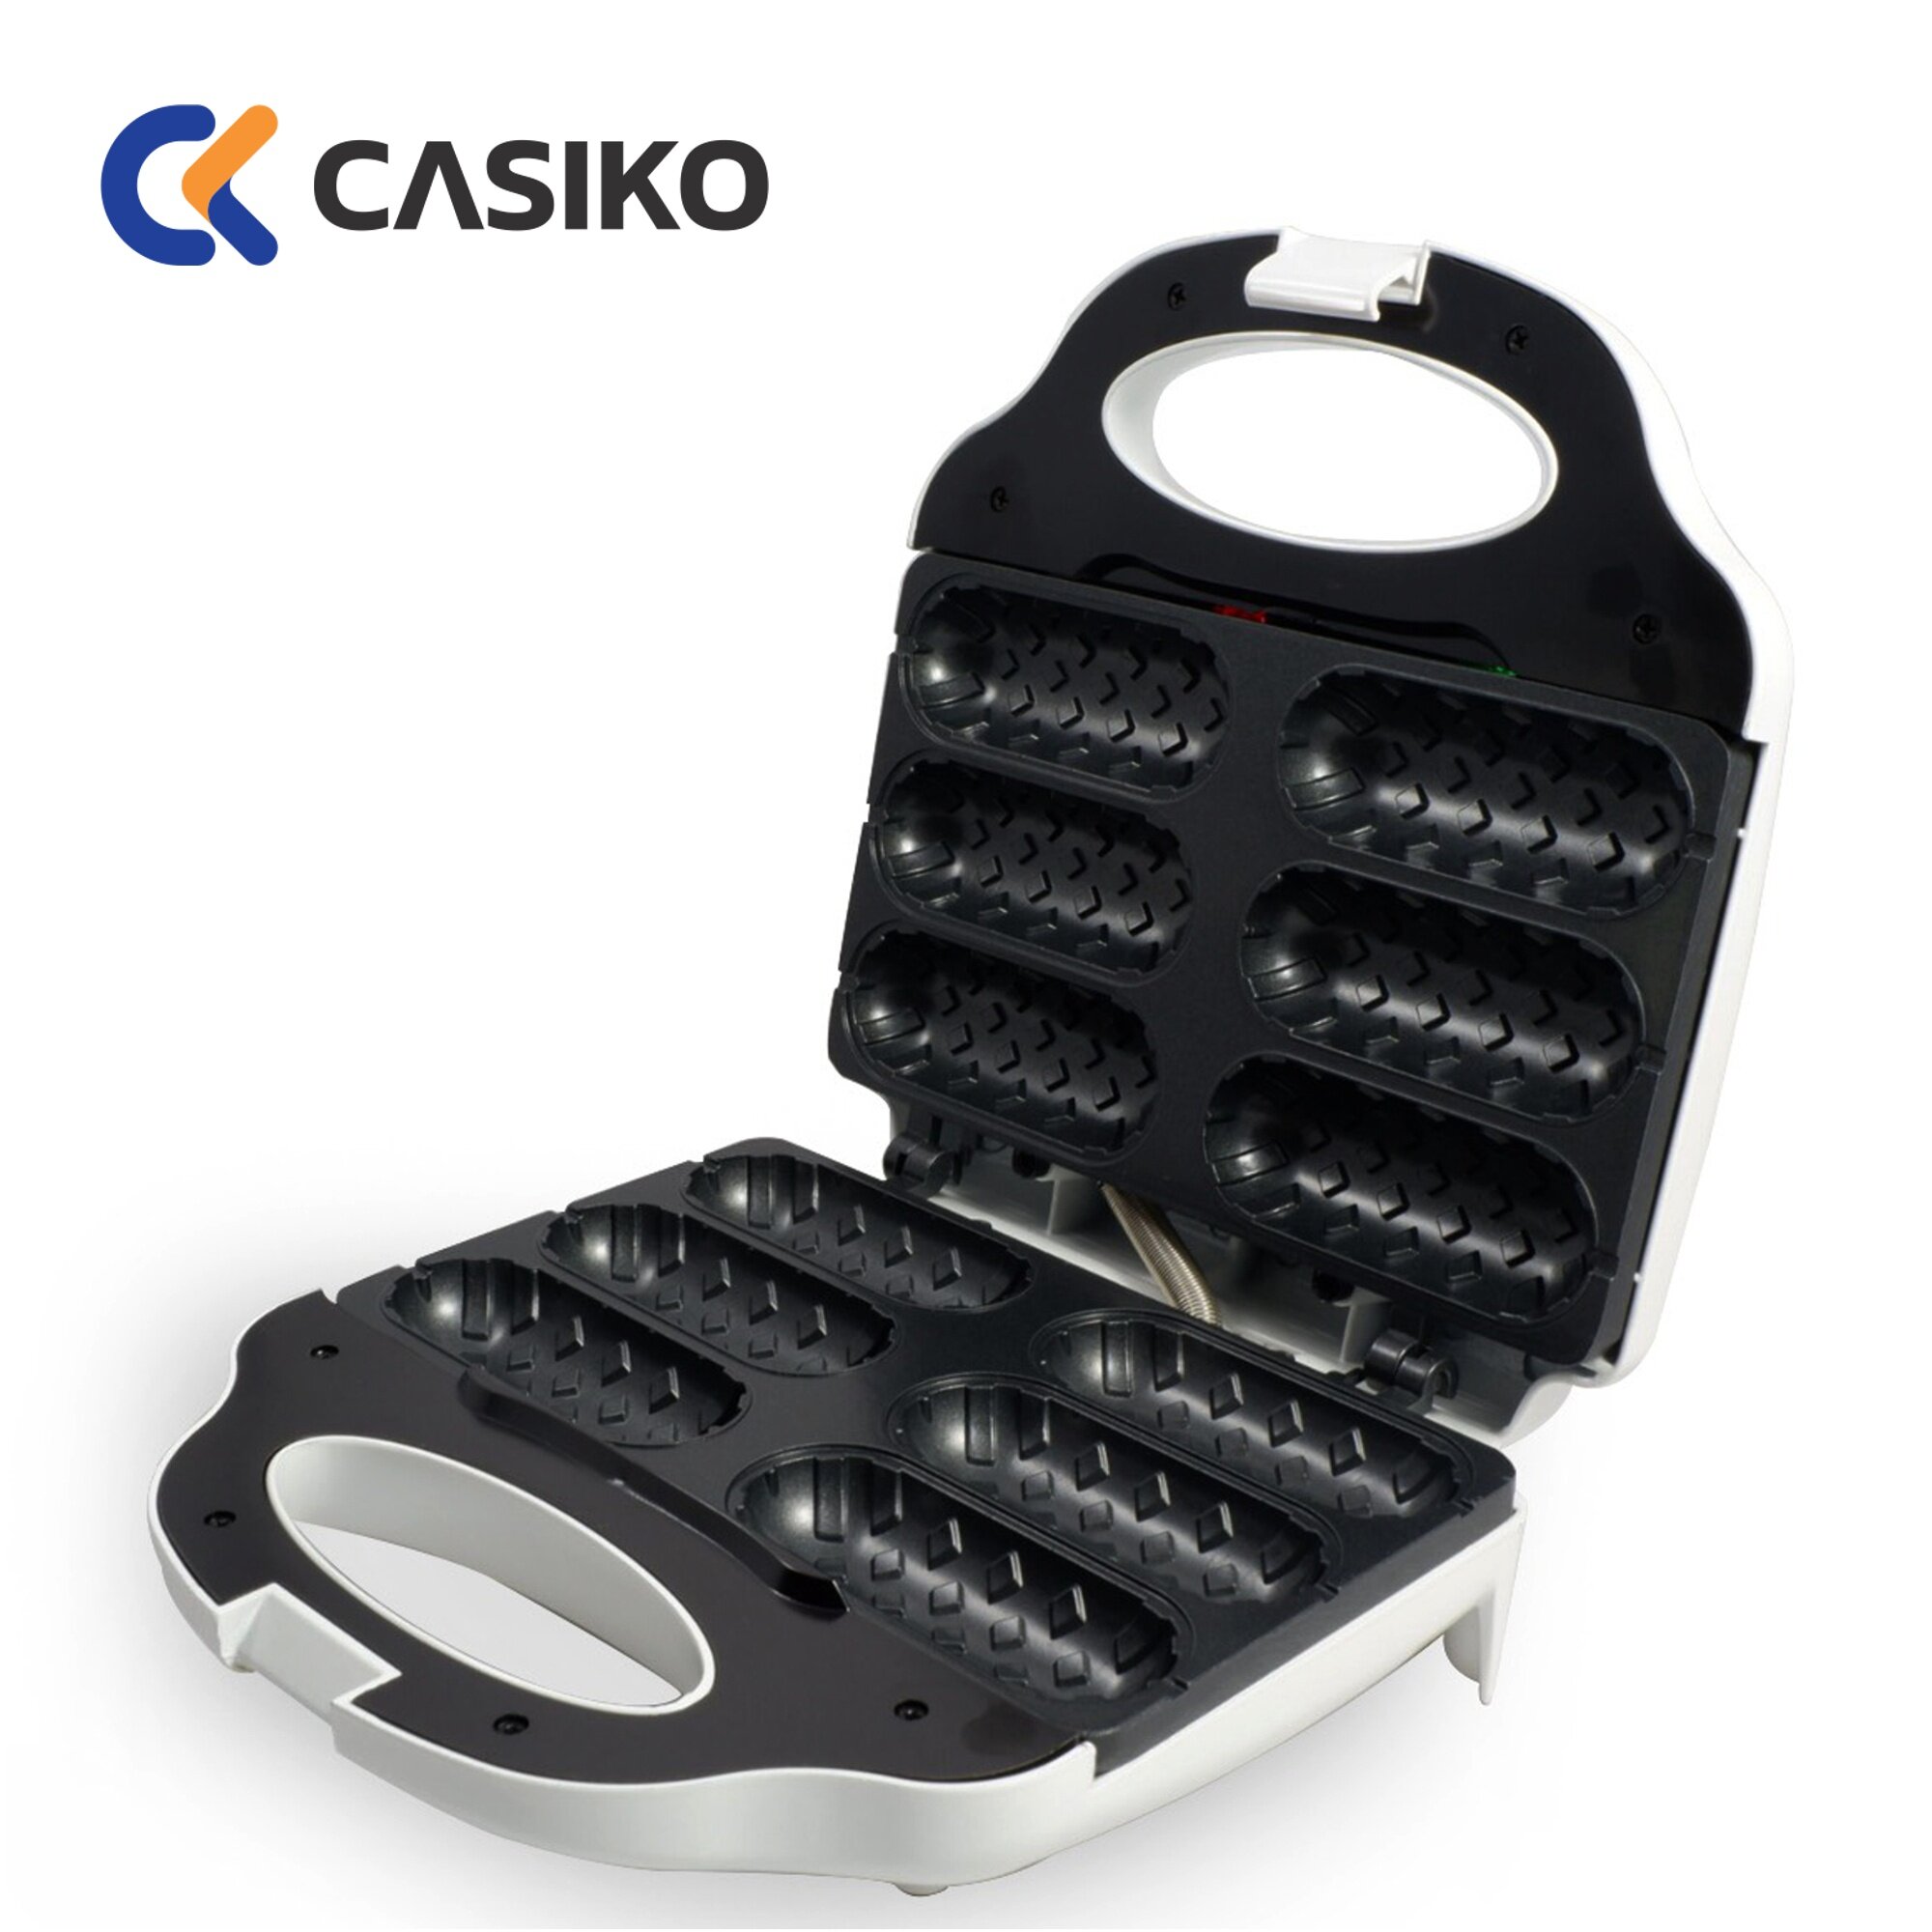 Casiko เครื่องทำวาฟเฟิลไส้กรอก รุ่น CK 5018